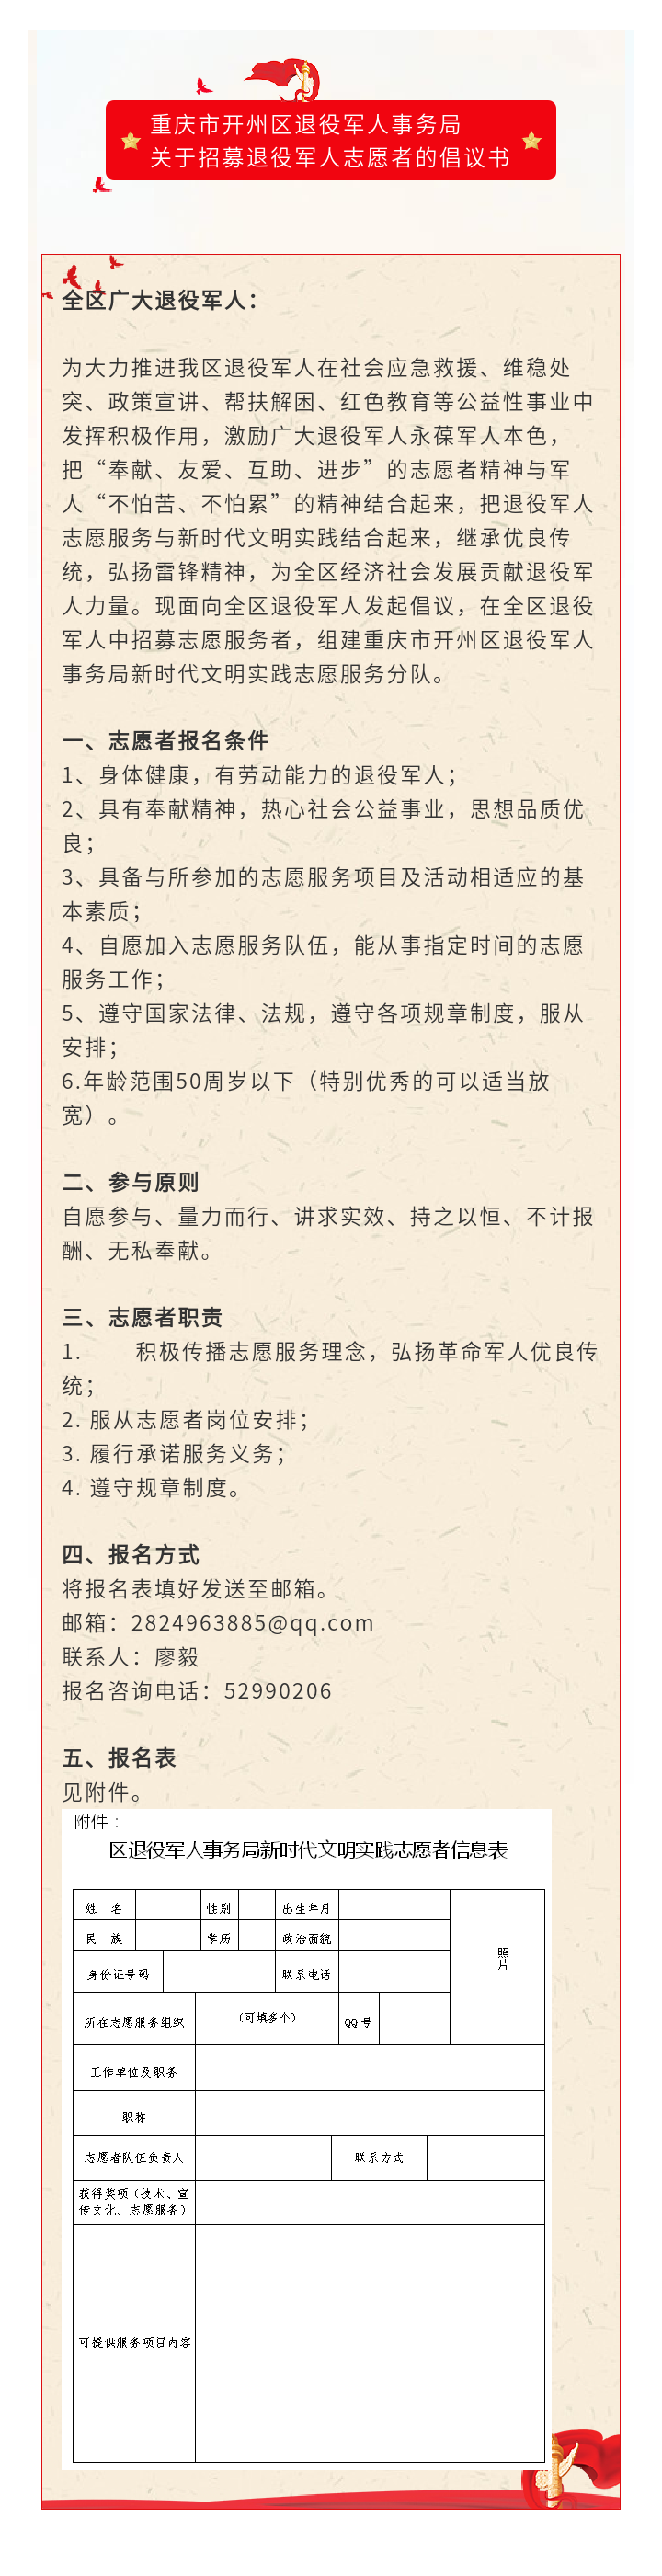 重庆市开州区退役军人事务局关于招募退役军人志愿者的倡议书【皇冠正规娱乐平台】(图1)